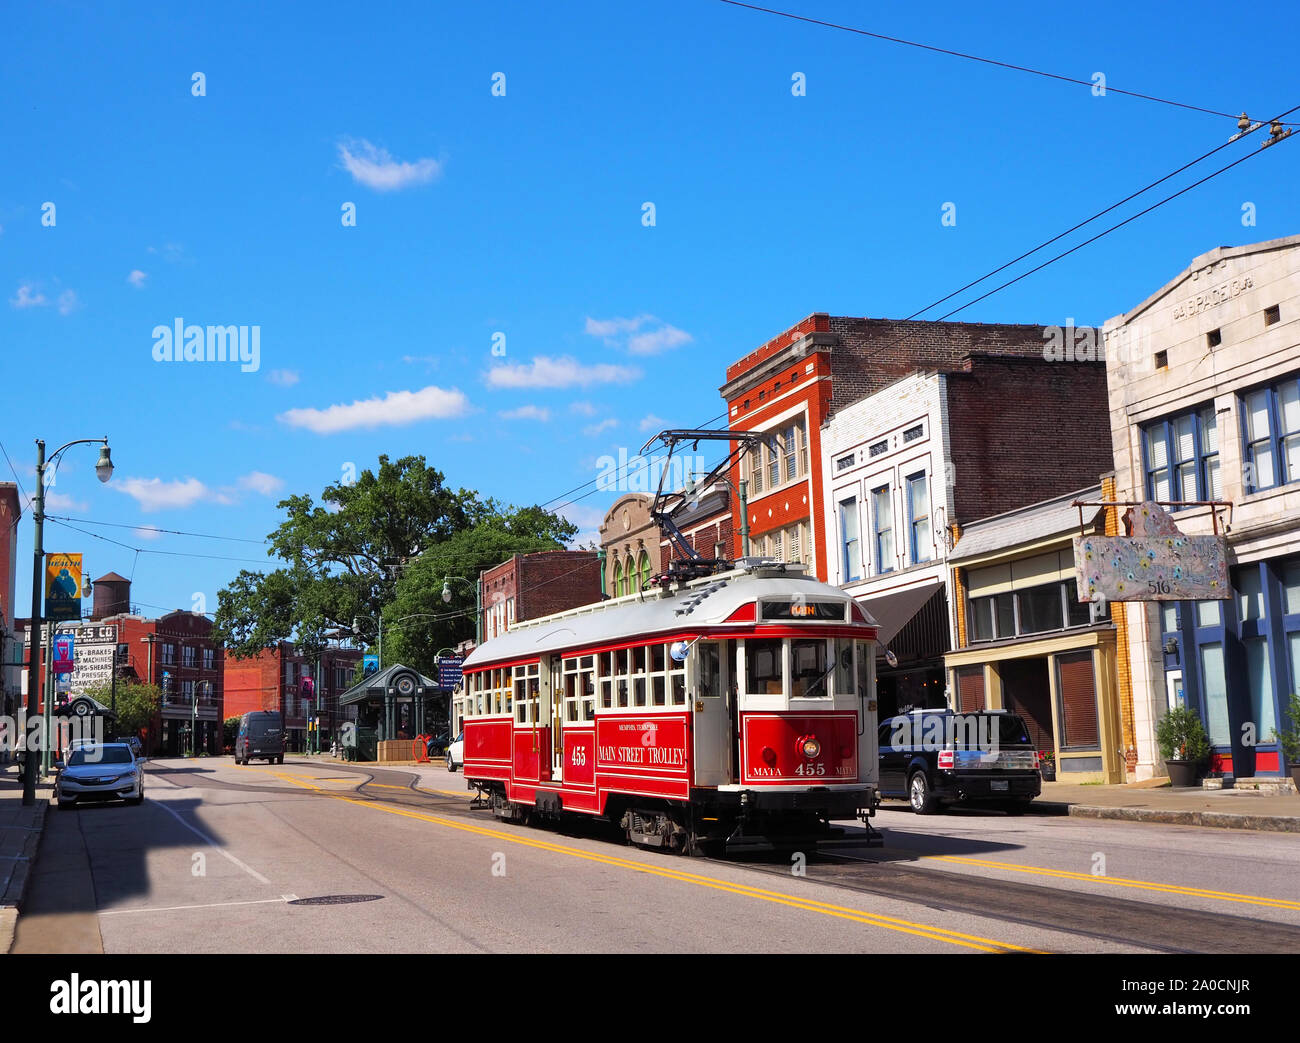 MEMPHIS, Tennessee - Juli 23, 2019: Eine elektrische Straßenbahn trolley Kreuzfahrten entlang unter dem Stromleitungen auf der Main St. in Memphis, Tennessee auf einem Sommer d Stockfoto